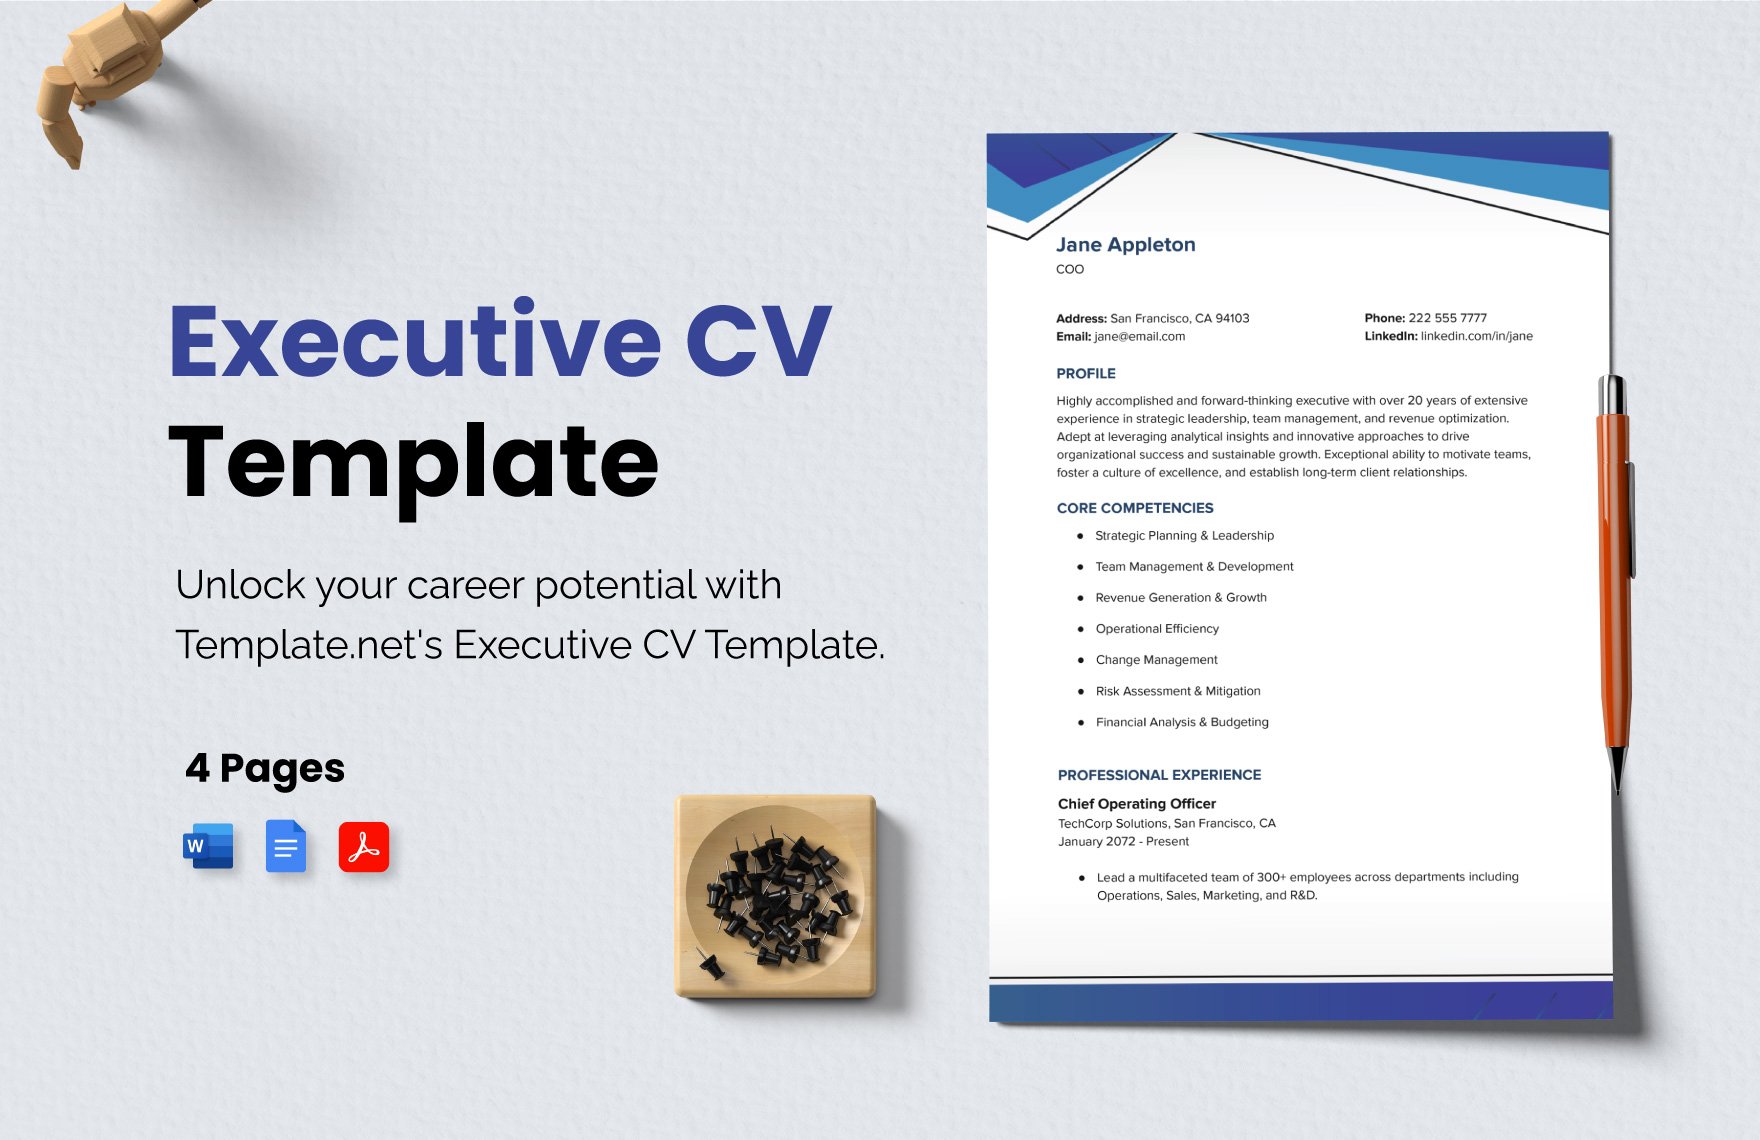 Executive CV Template 